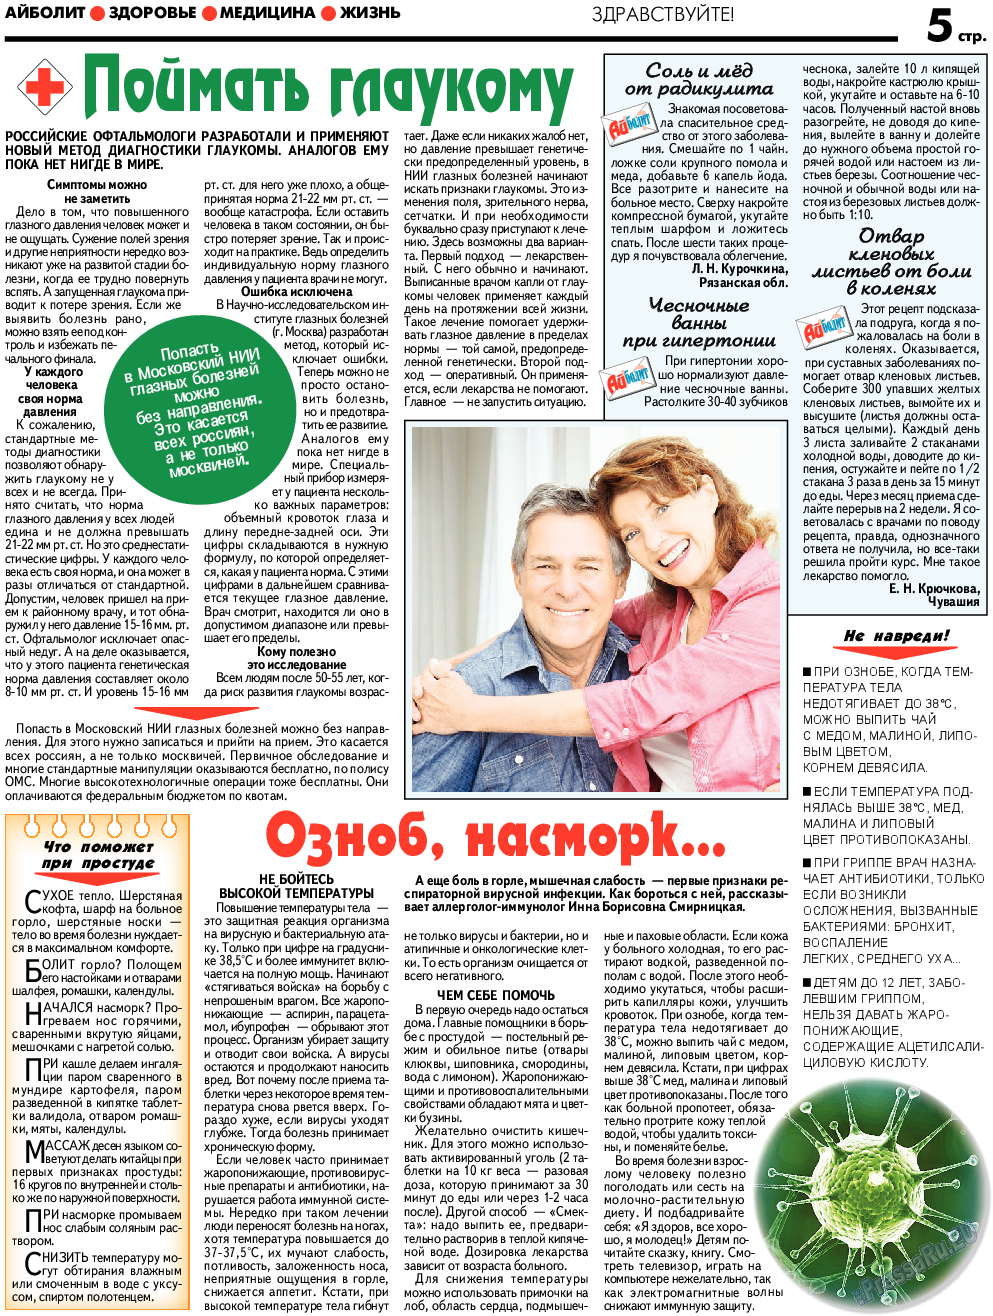 АйБолит, газета. 2018 №2 стр.5